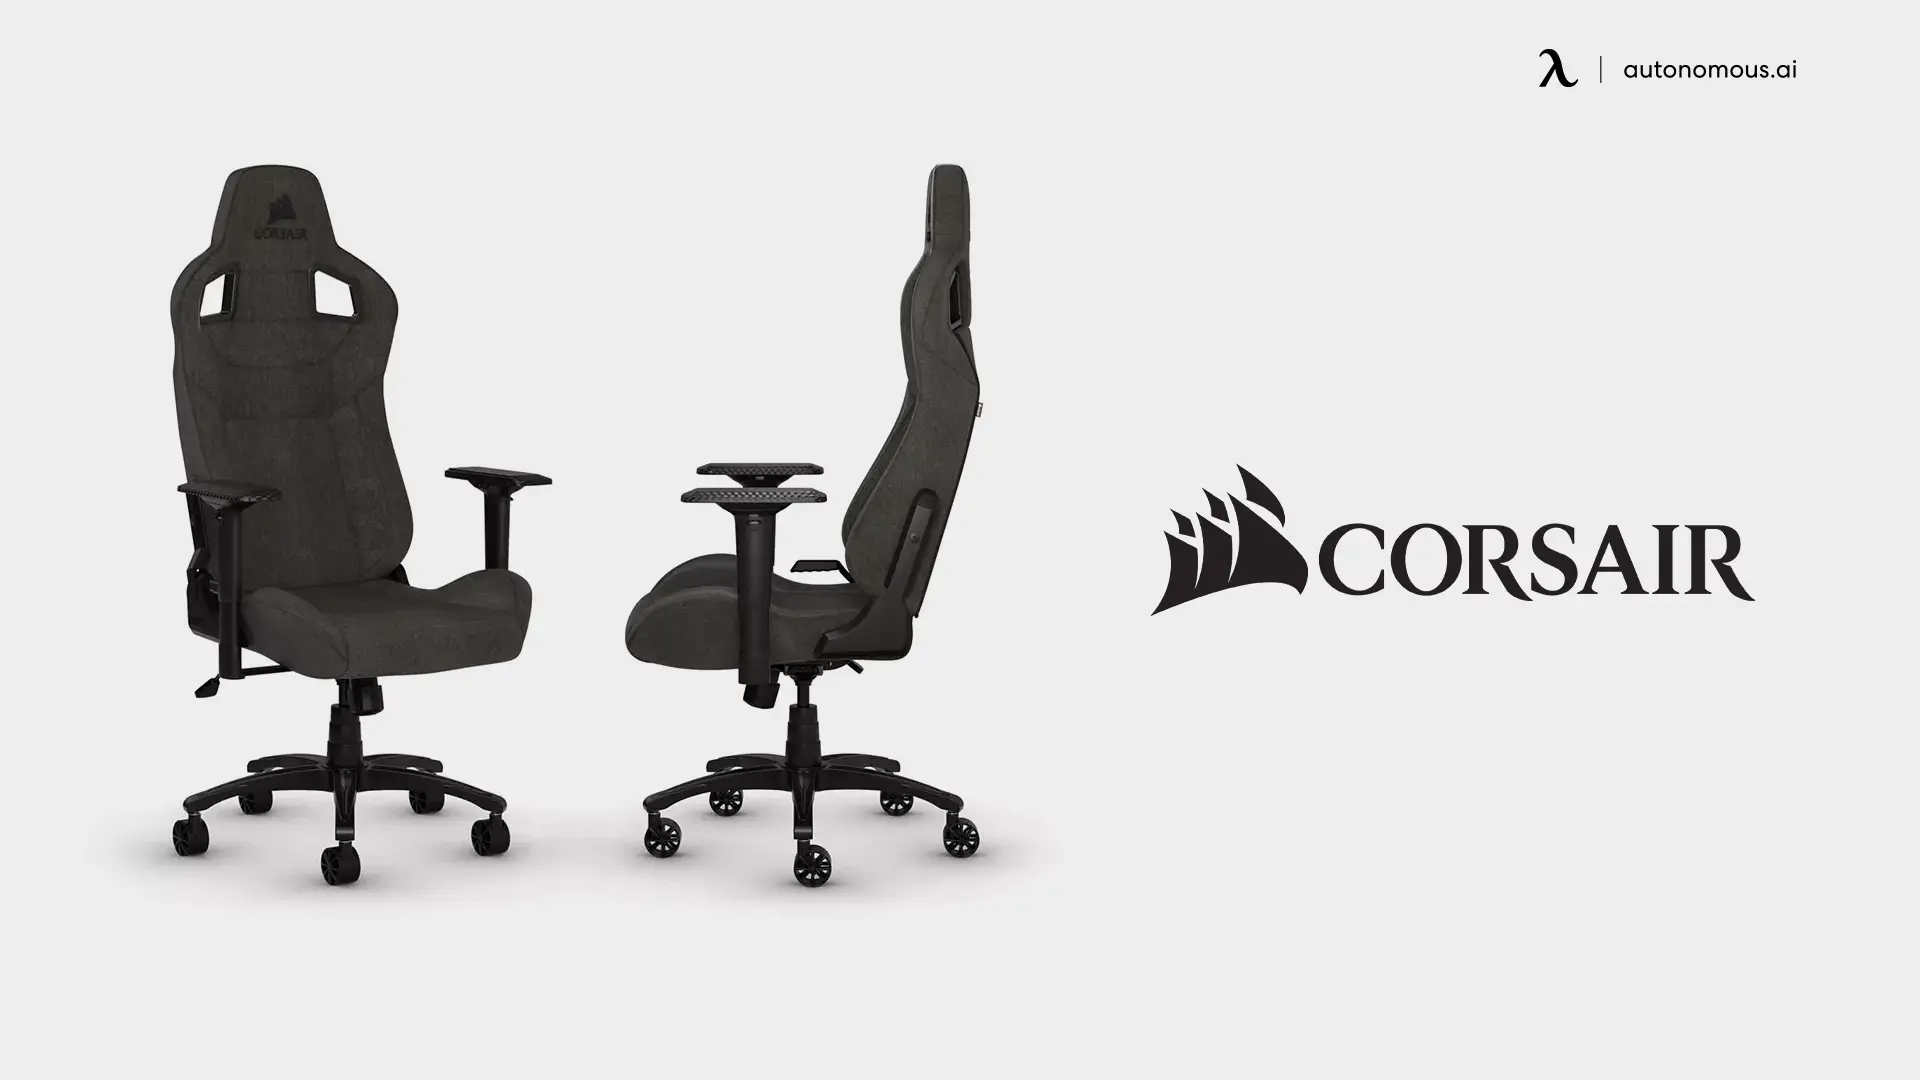 Corsair gaming chair brand